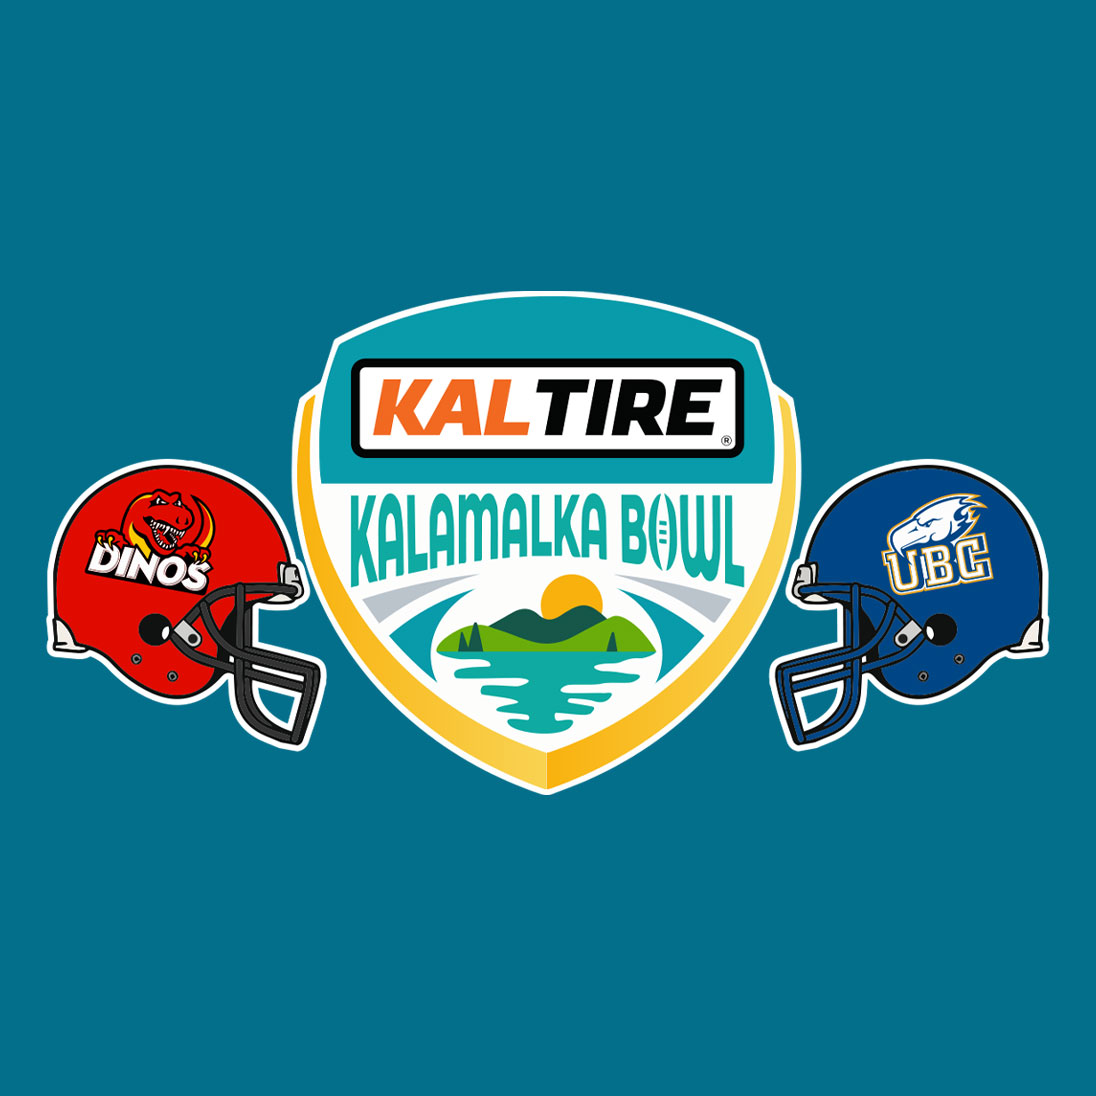 Kalamalka Bowl Game at GVAP